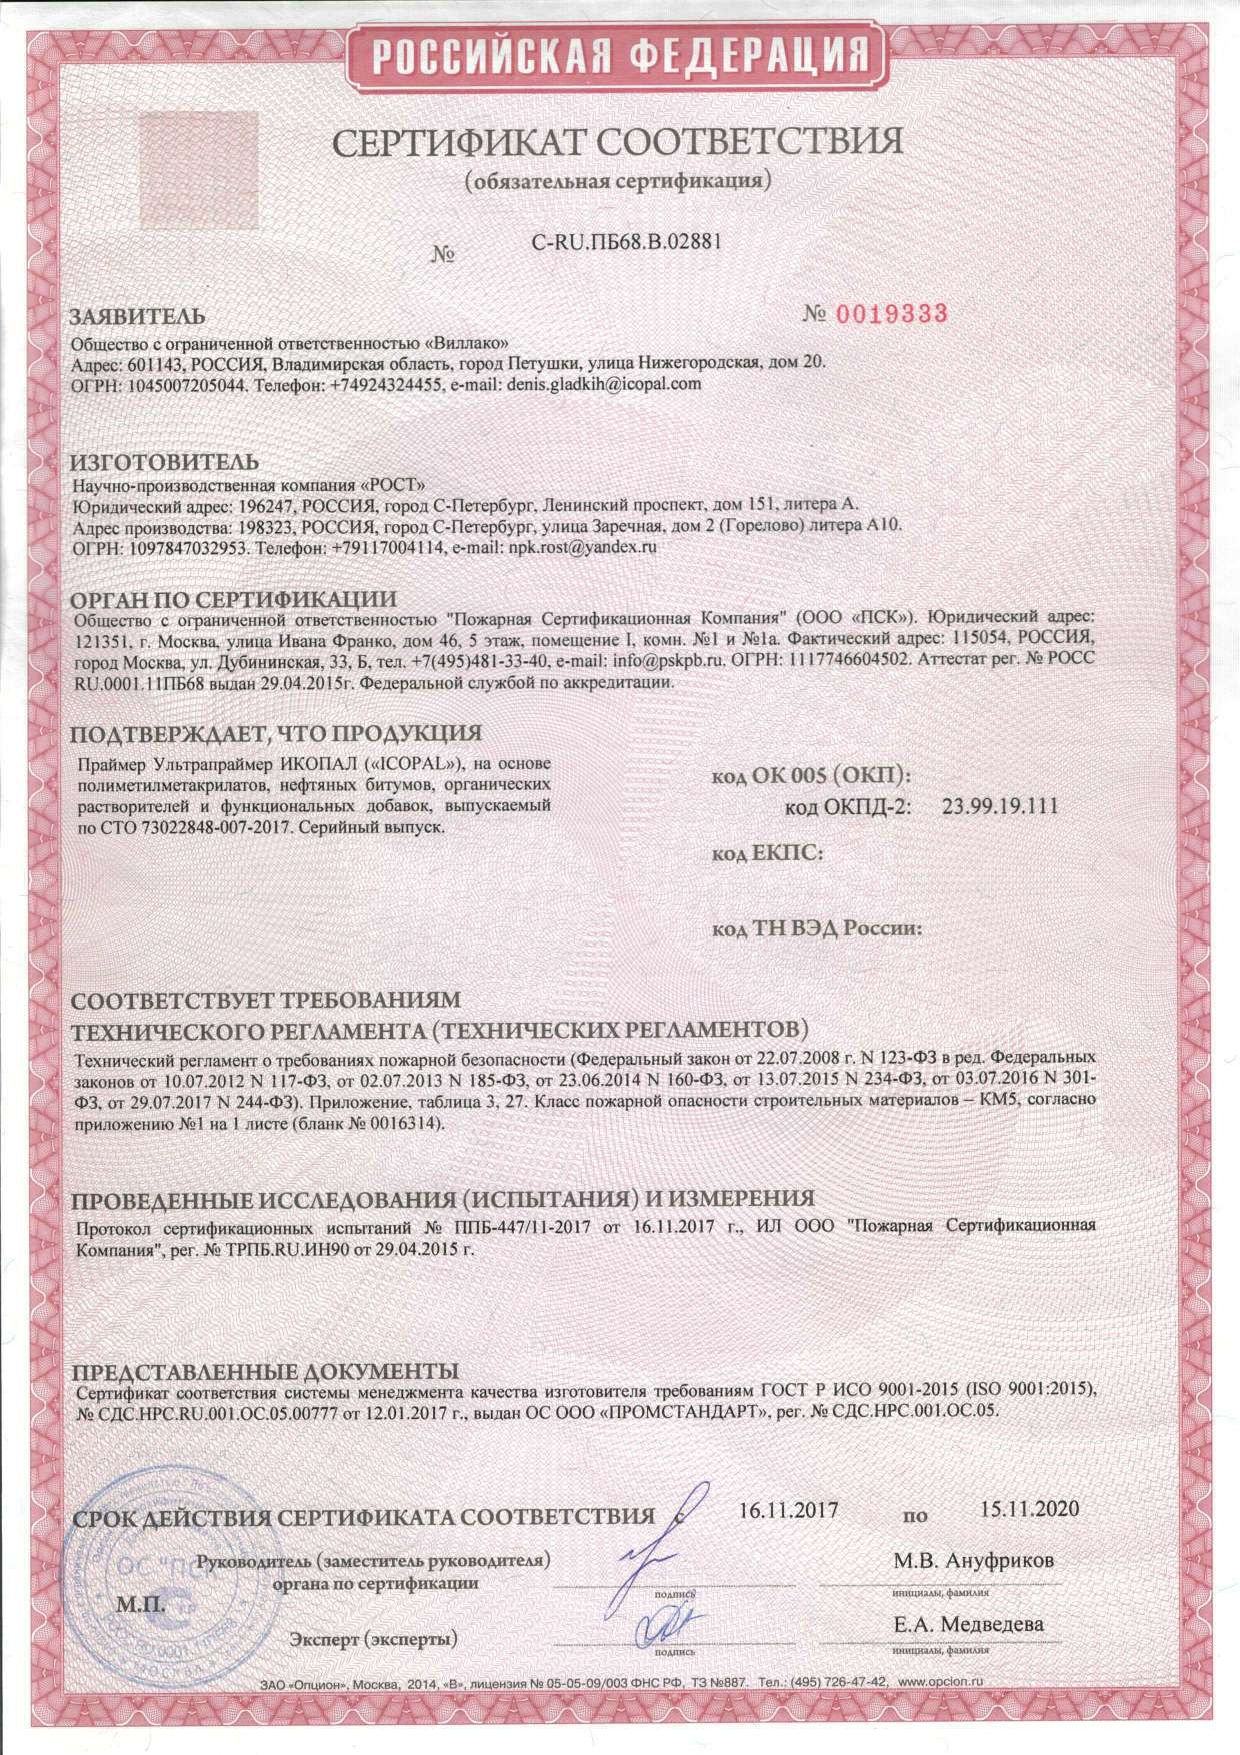 Сертификат соответствия Техническому регламенту о требованиях пожарной безопасности